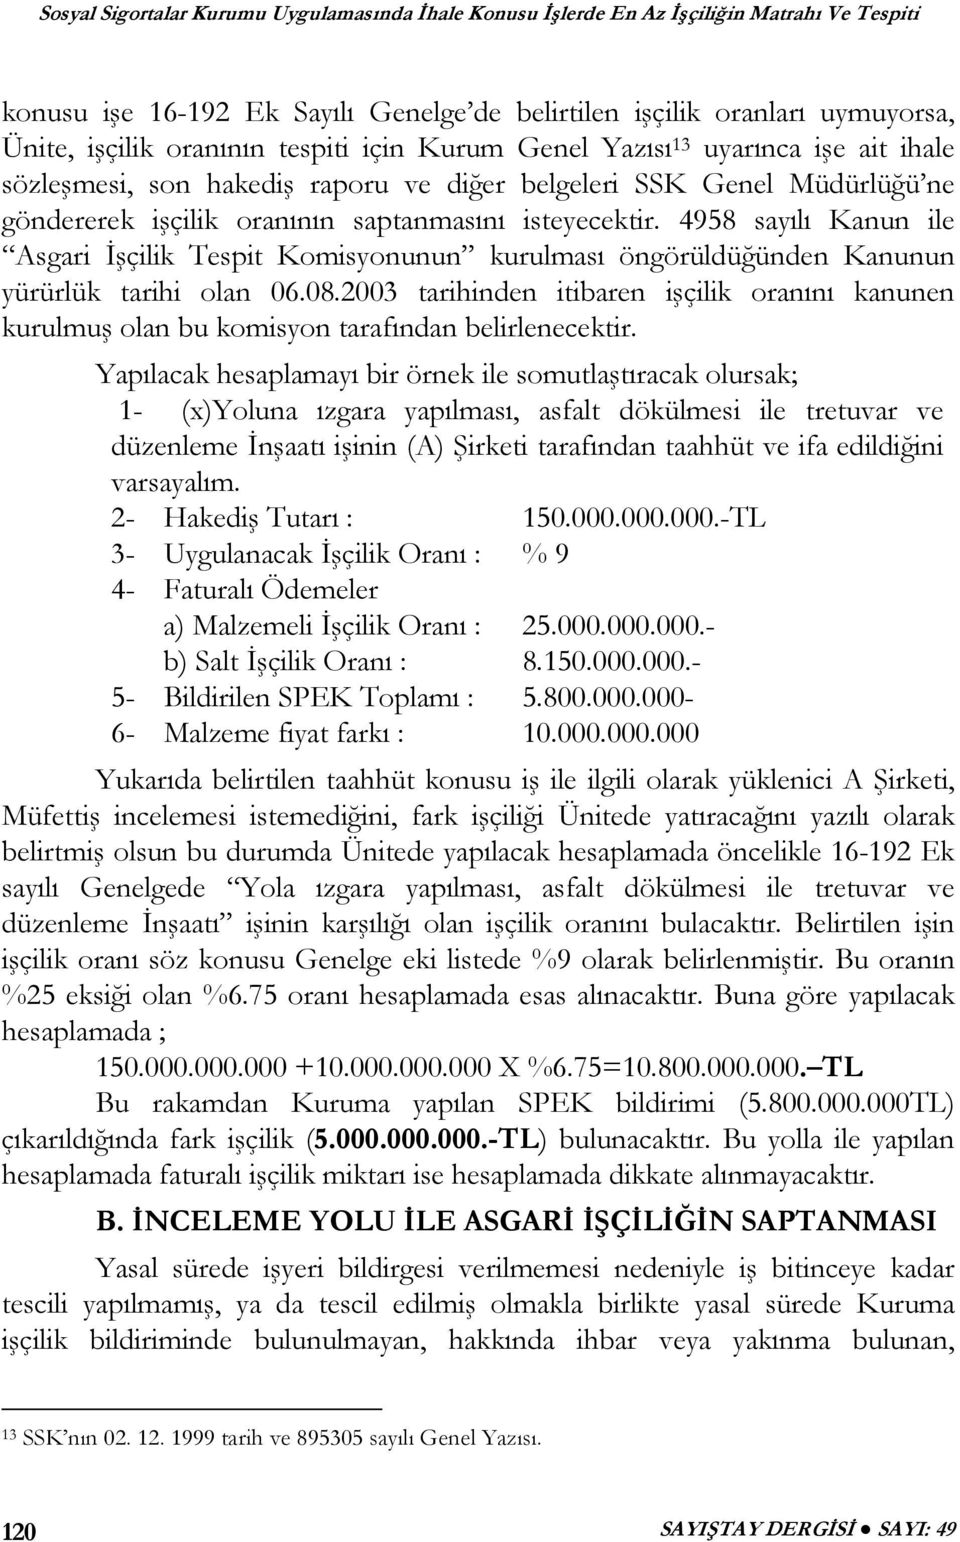 4958 sayılı Kanun ile Asgari İşçilik Tespit Komisyonunun kurulması öngörüldüğünden Kanunun yürürlük tarihi olan 06.08.